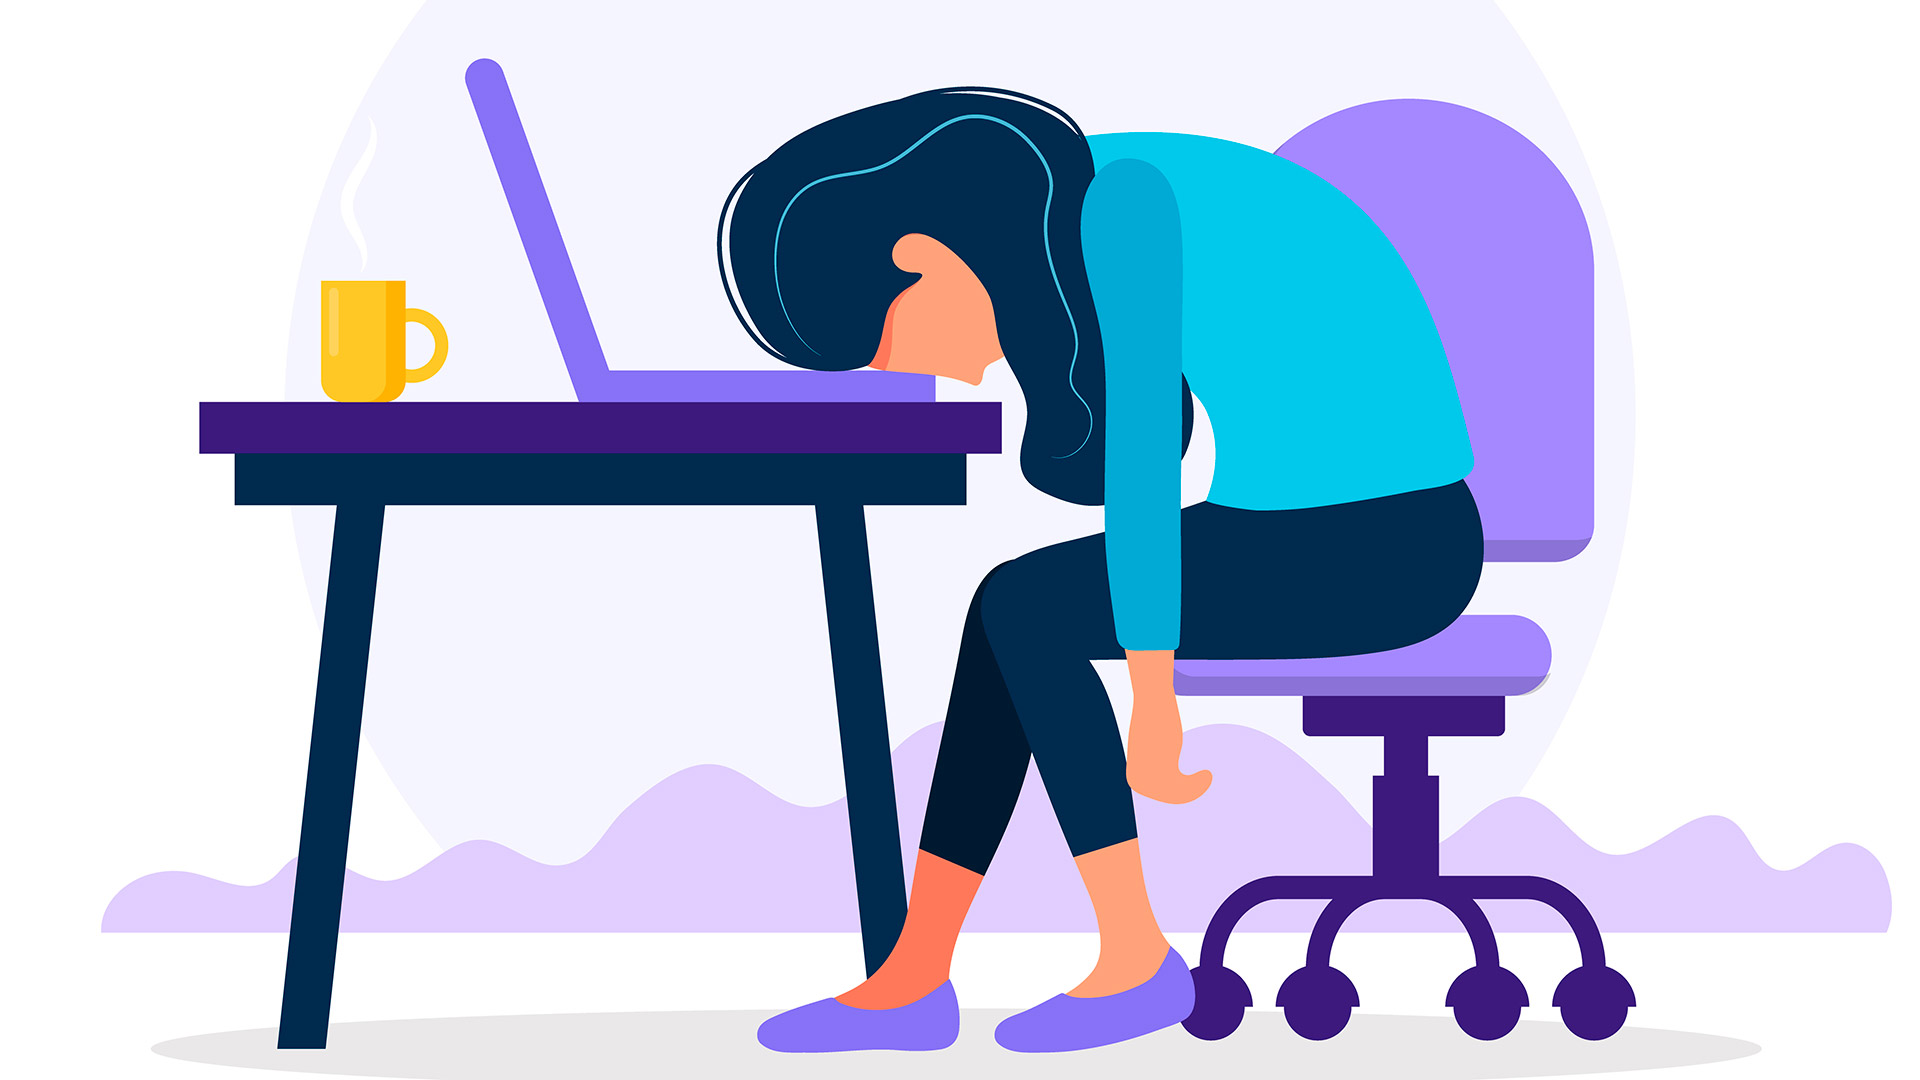 Varios estudios coinciden en observar que las personas que se recuperaron del COVID-19 a veces experimentan dificultades persistentes de concentración, así como dolores de cabeza, ansiedad, fatiga o trastornos del sueño (Shutterstock)